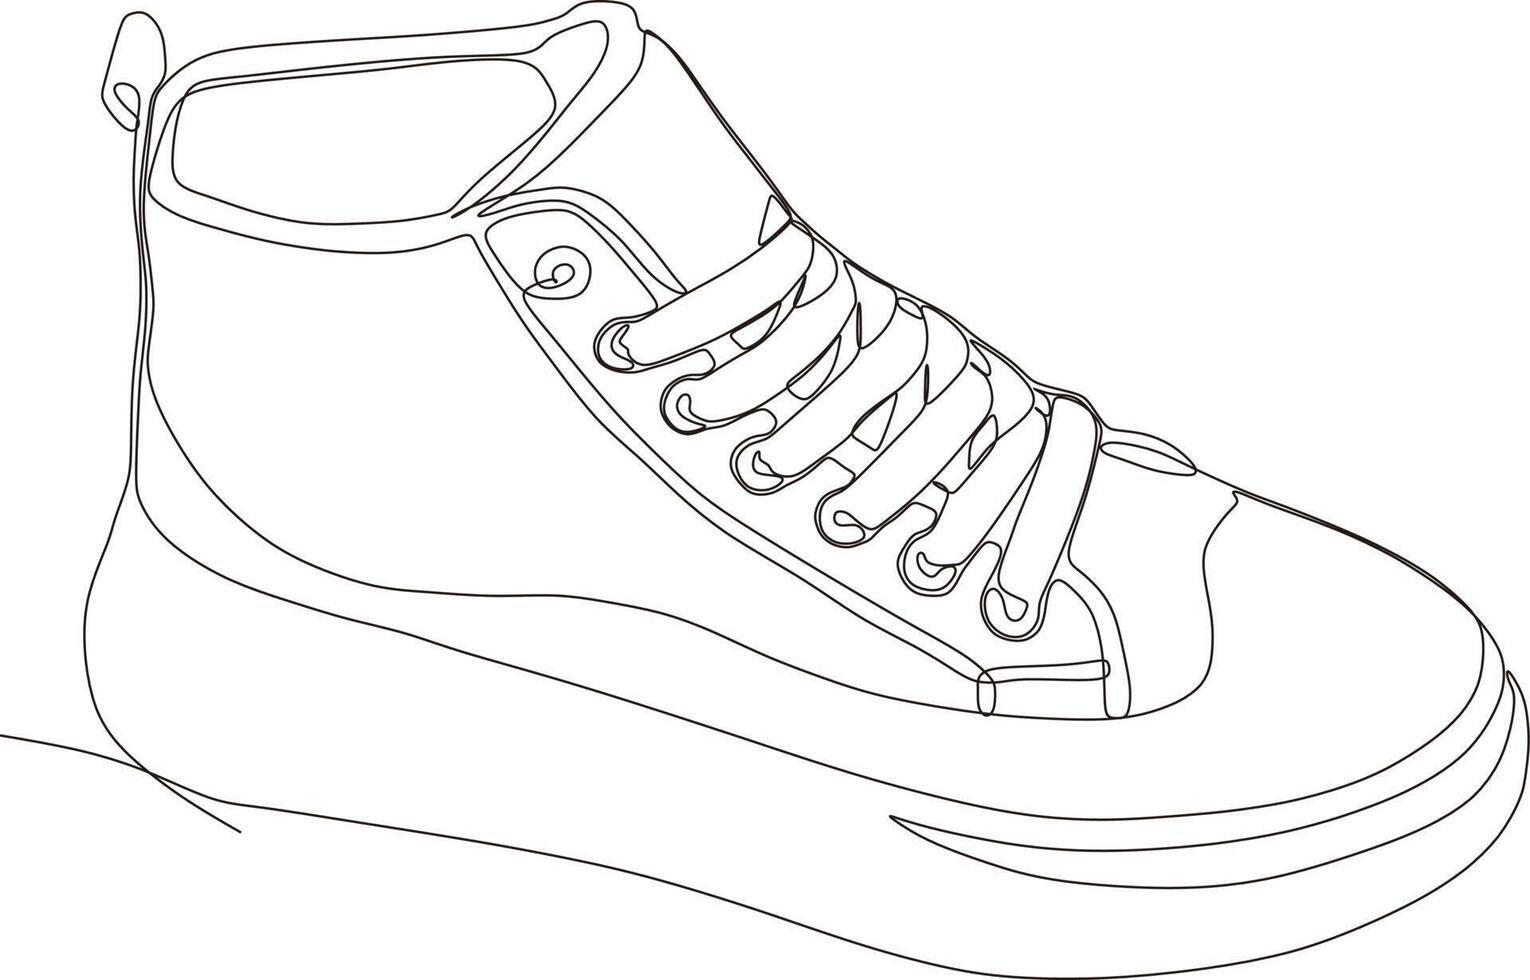 desenho de arte de linha contínua de sapatos em preto e branco vetor